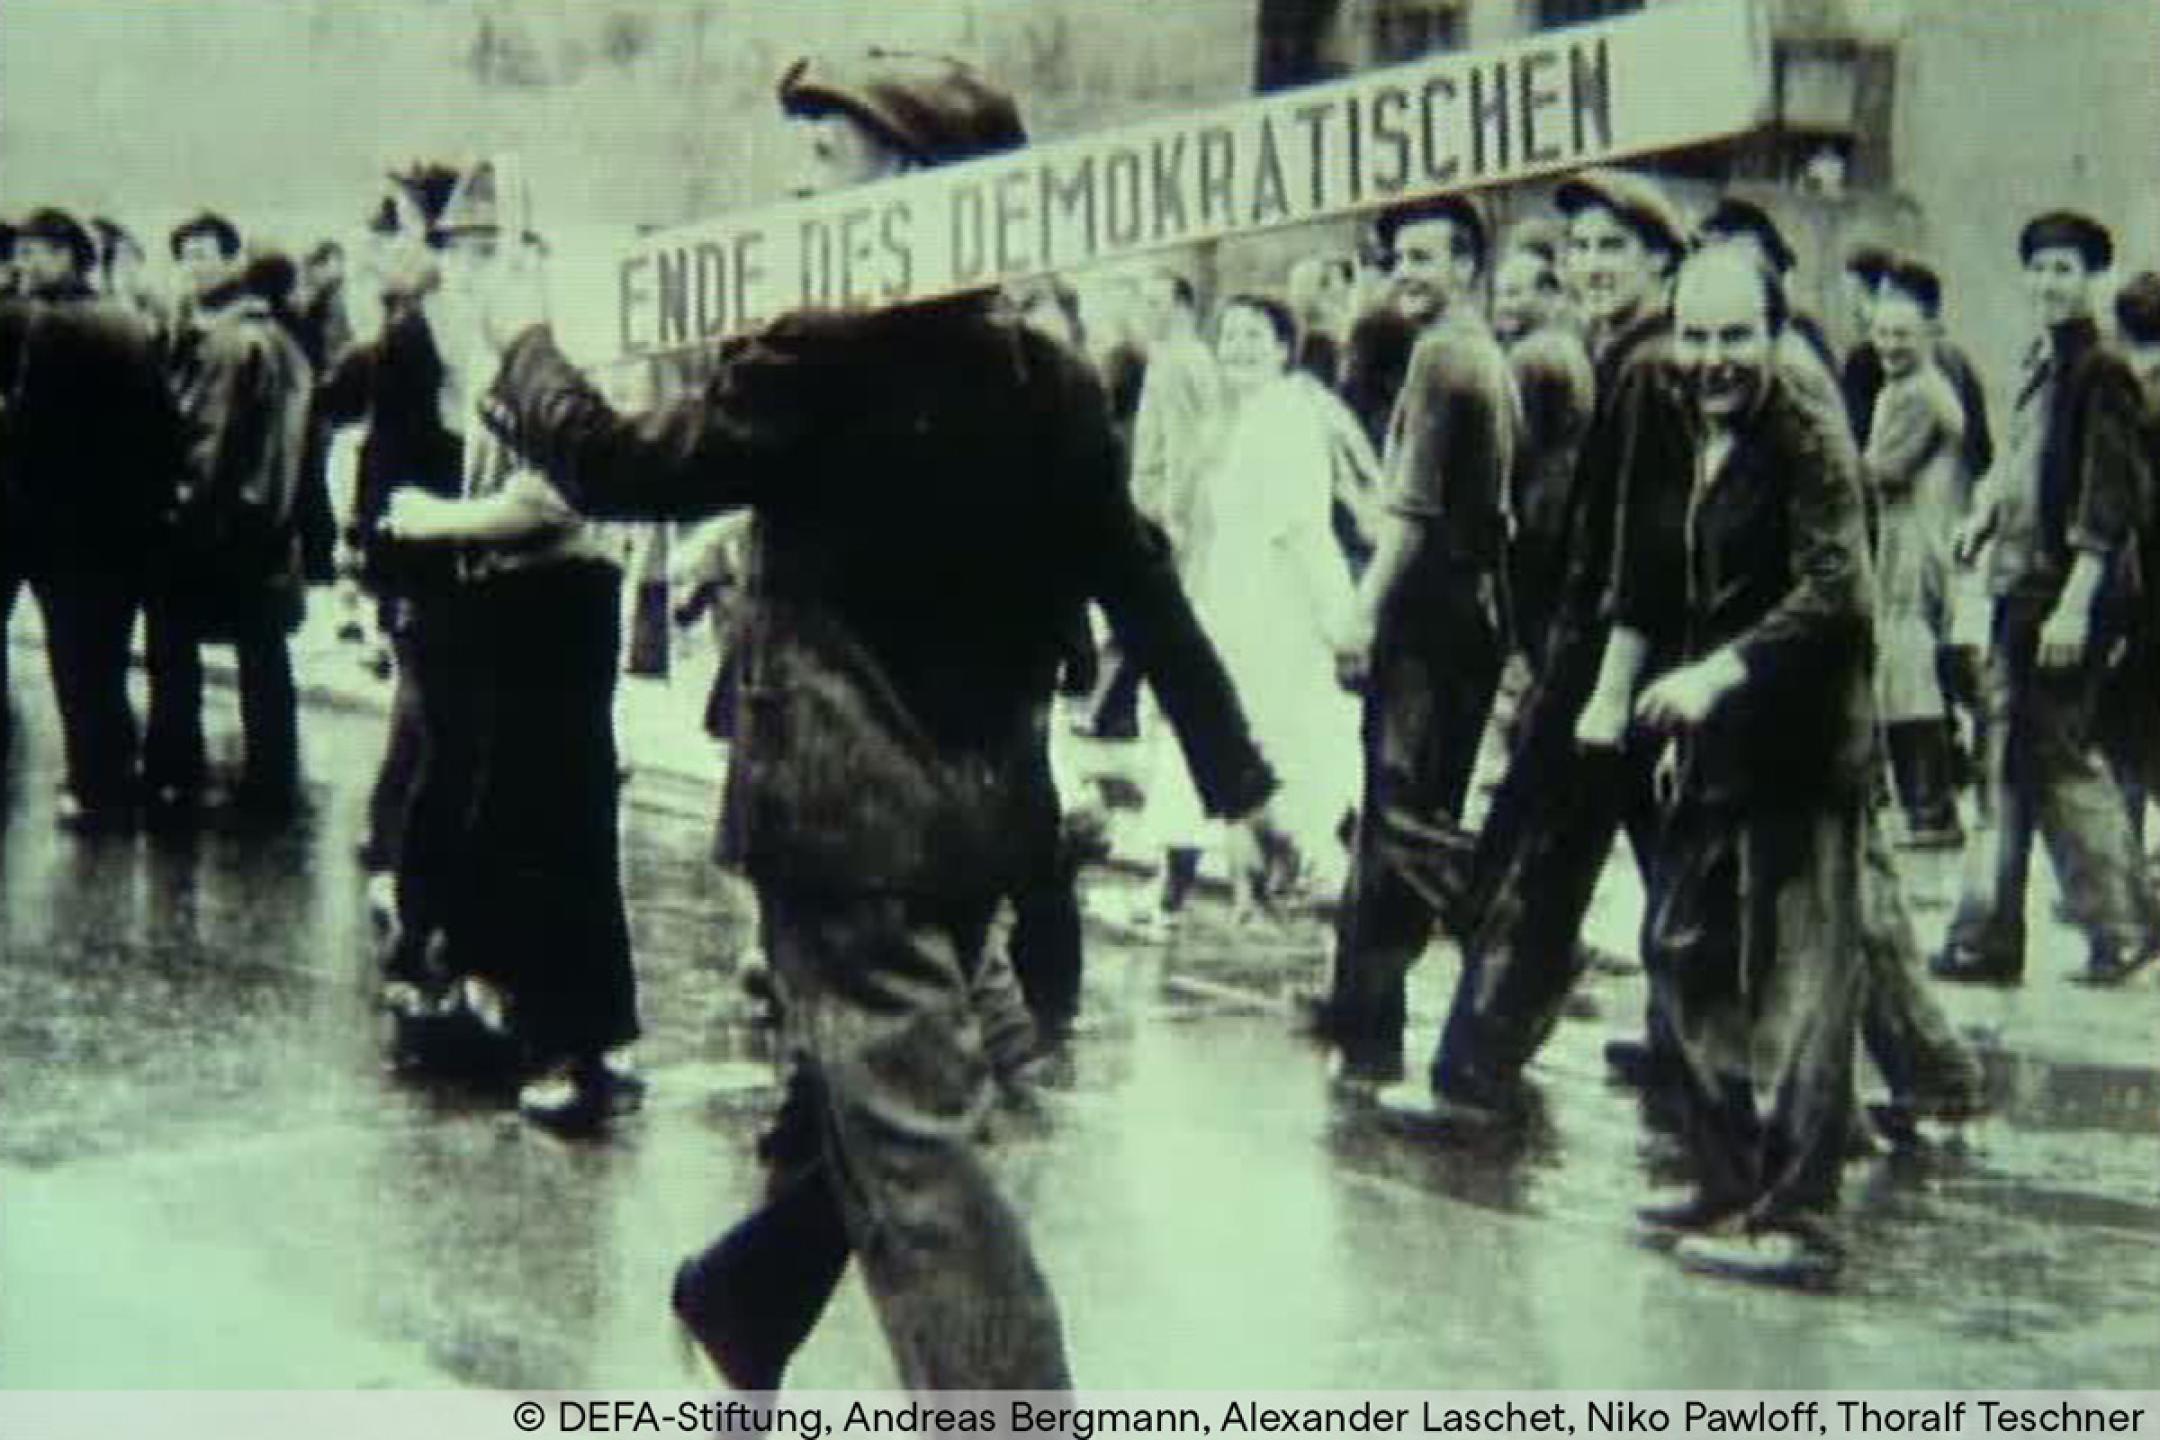 Schwarz-Weiß-Aufnahme: Mehrere Personen laufen in Gruppen auf einer Straße. Eine Person im Vordergrund trägt auf der Schulter einen langen Balken, darauf steht: "Ende des Demokratischen".